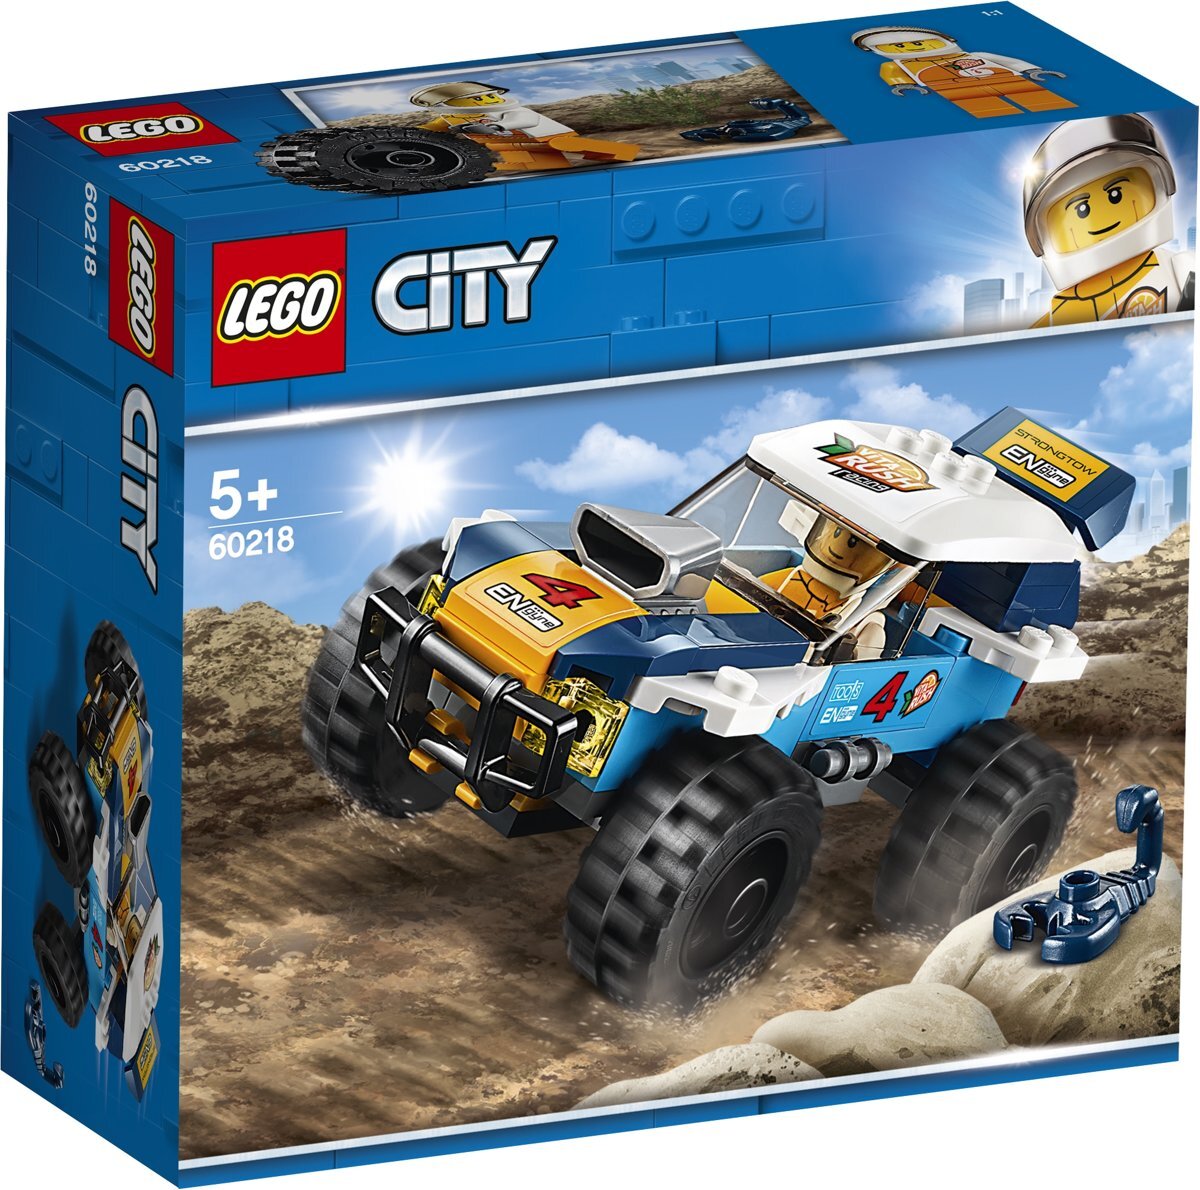 lego City Woestijn Rallywagen 60218 Race door de woestijn achter het stuur van de coole woestijn rallywagen